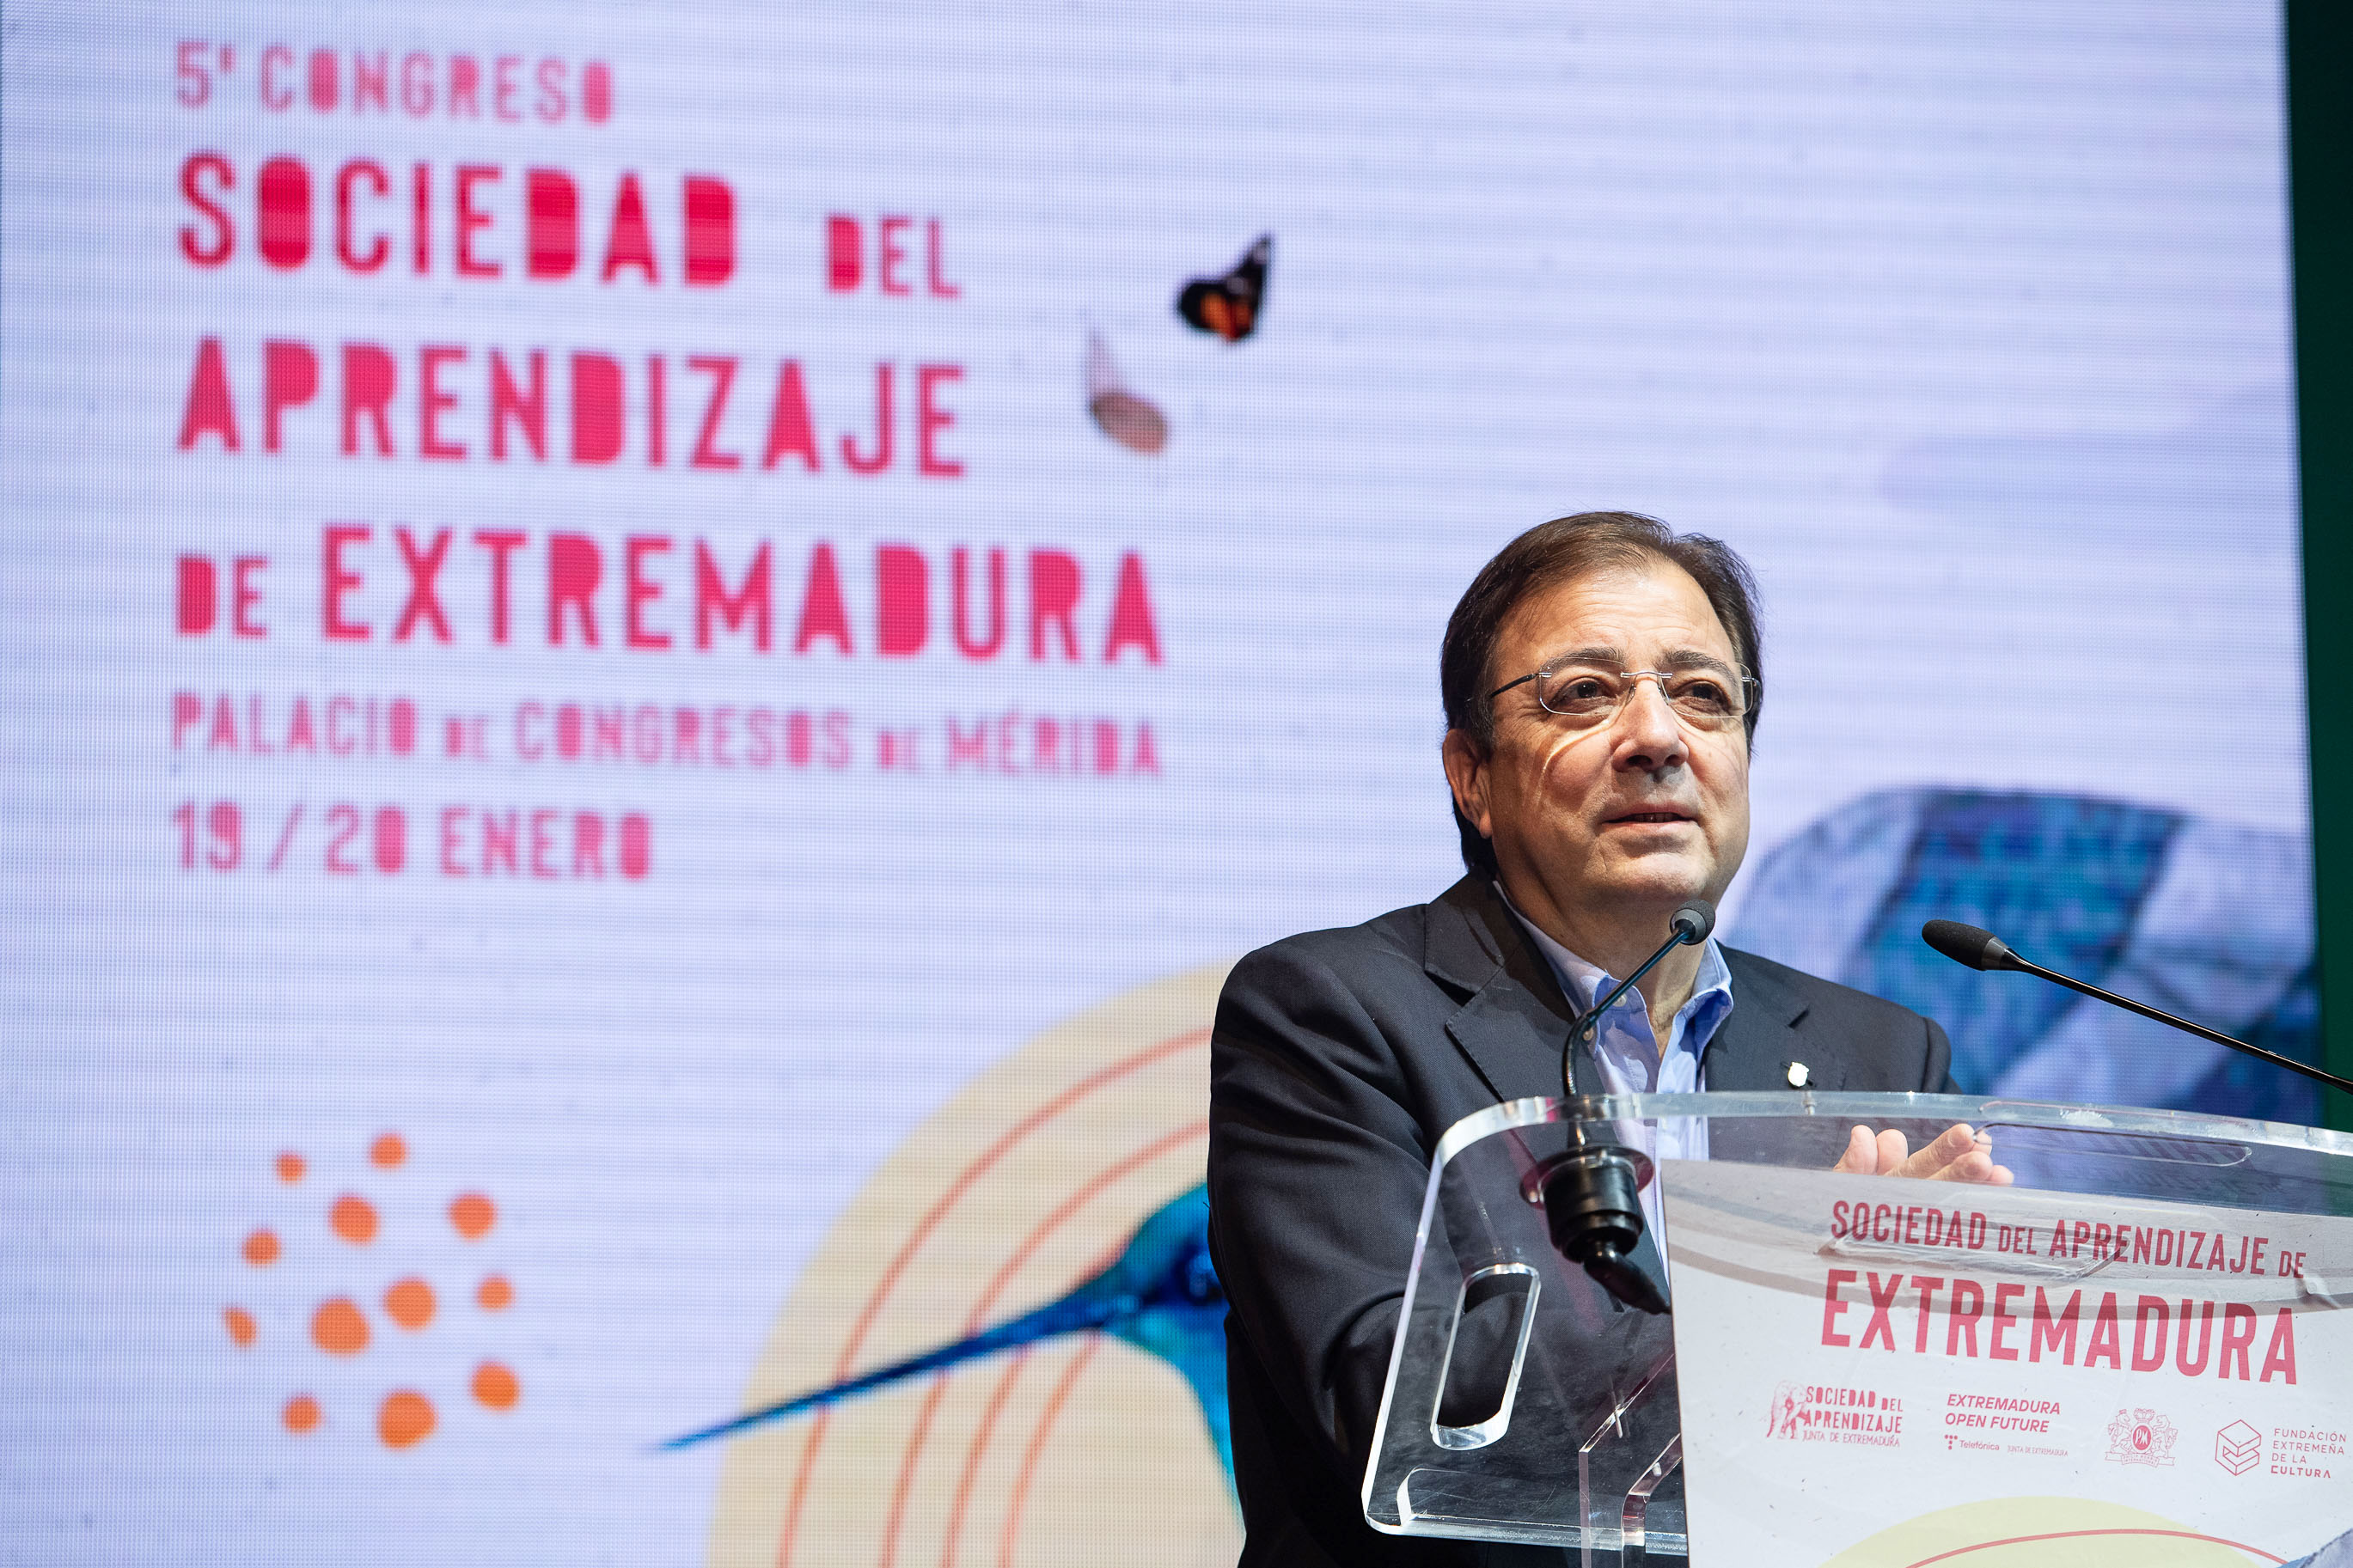 Fernández Vara interviene en la inauguración del Congreso del Aprendizaje